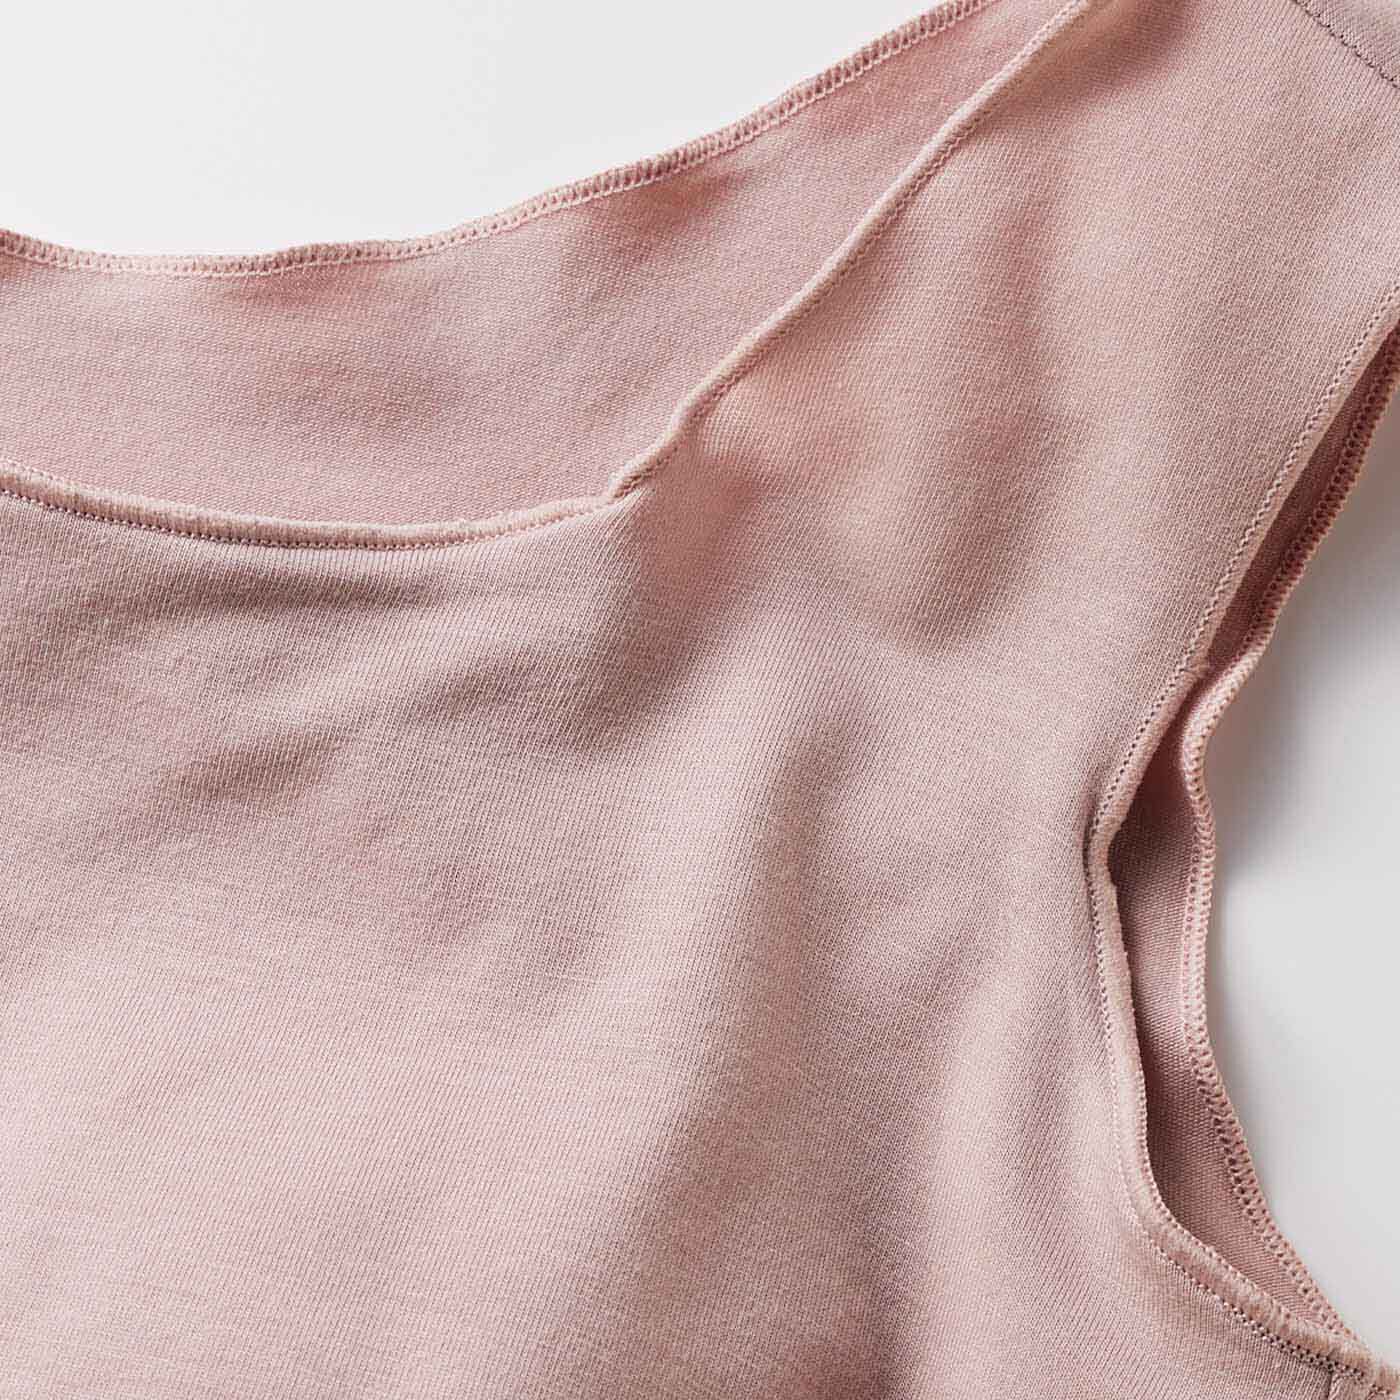 Real Stock|綿レーヨンとろのび素材の締め付けないリラックス時間 ブラインナー〈ピオニーピンク〉|衿とアームくり、すそはメロウ始末で締め付け感のないソフトな着け心地。